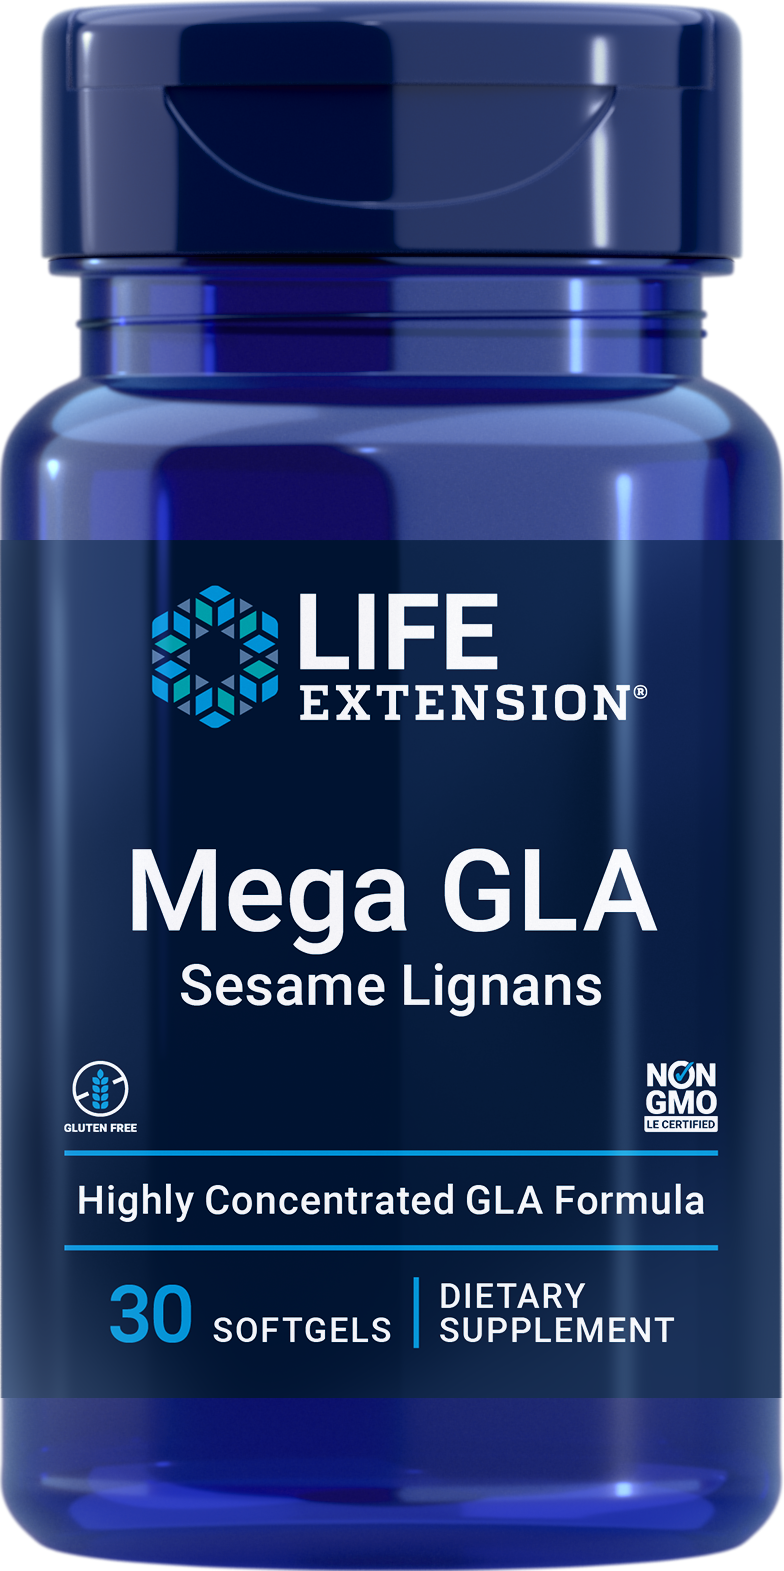 Life Extension Mega GLA Sesame Lignans 30Softgels